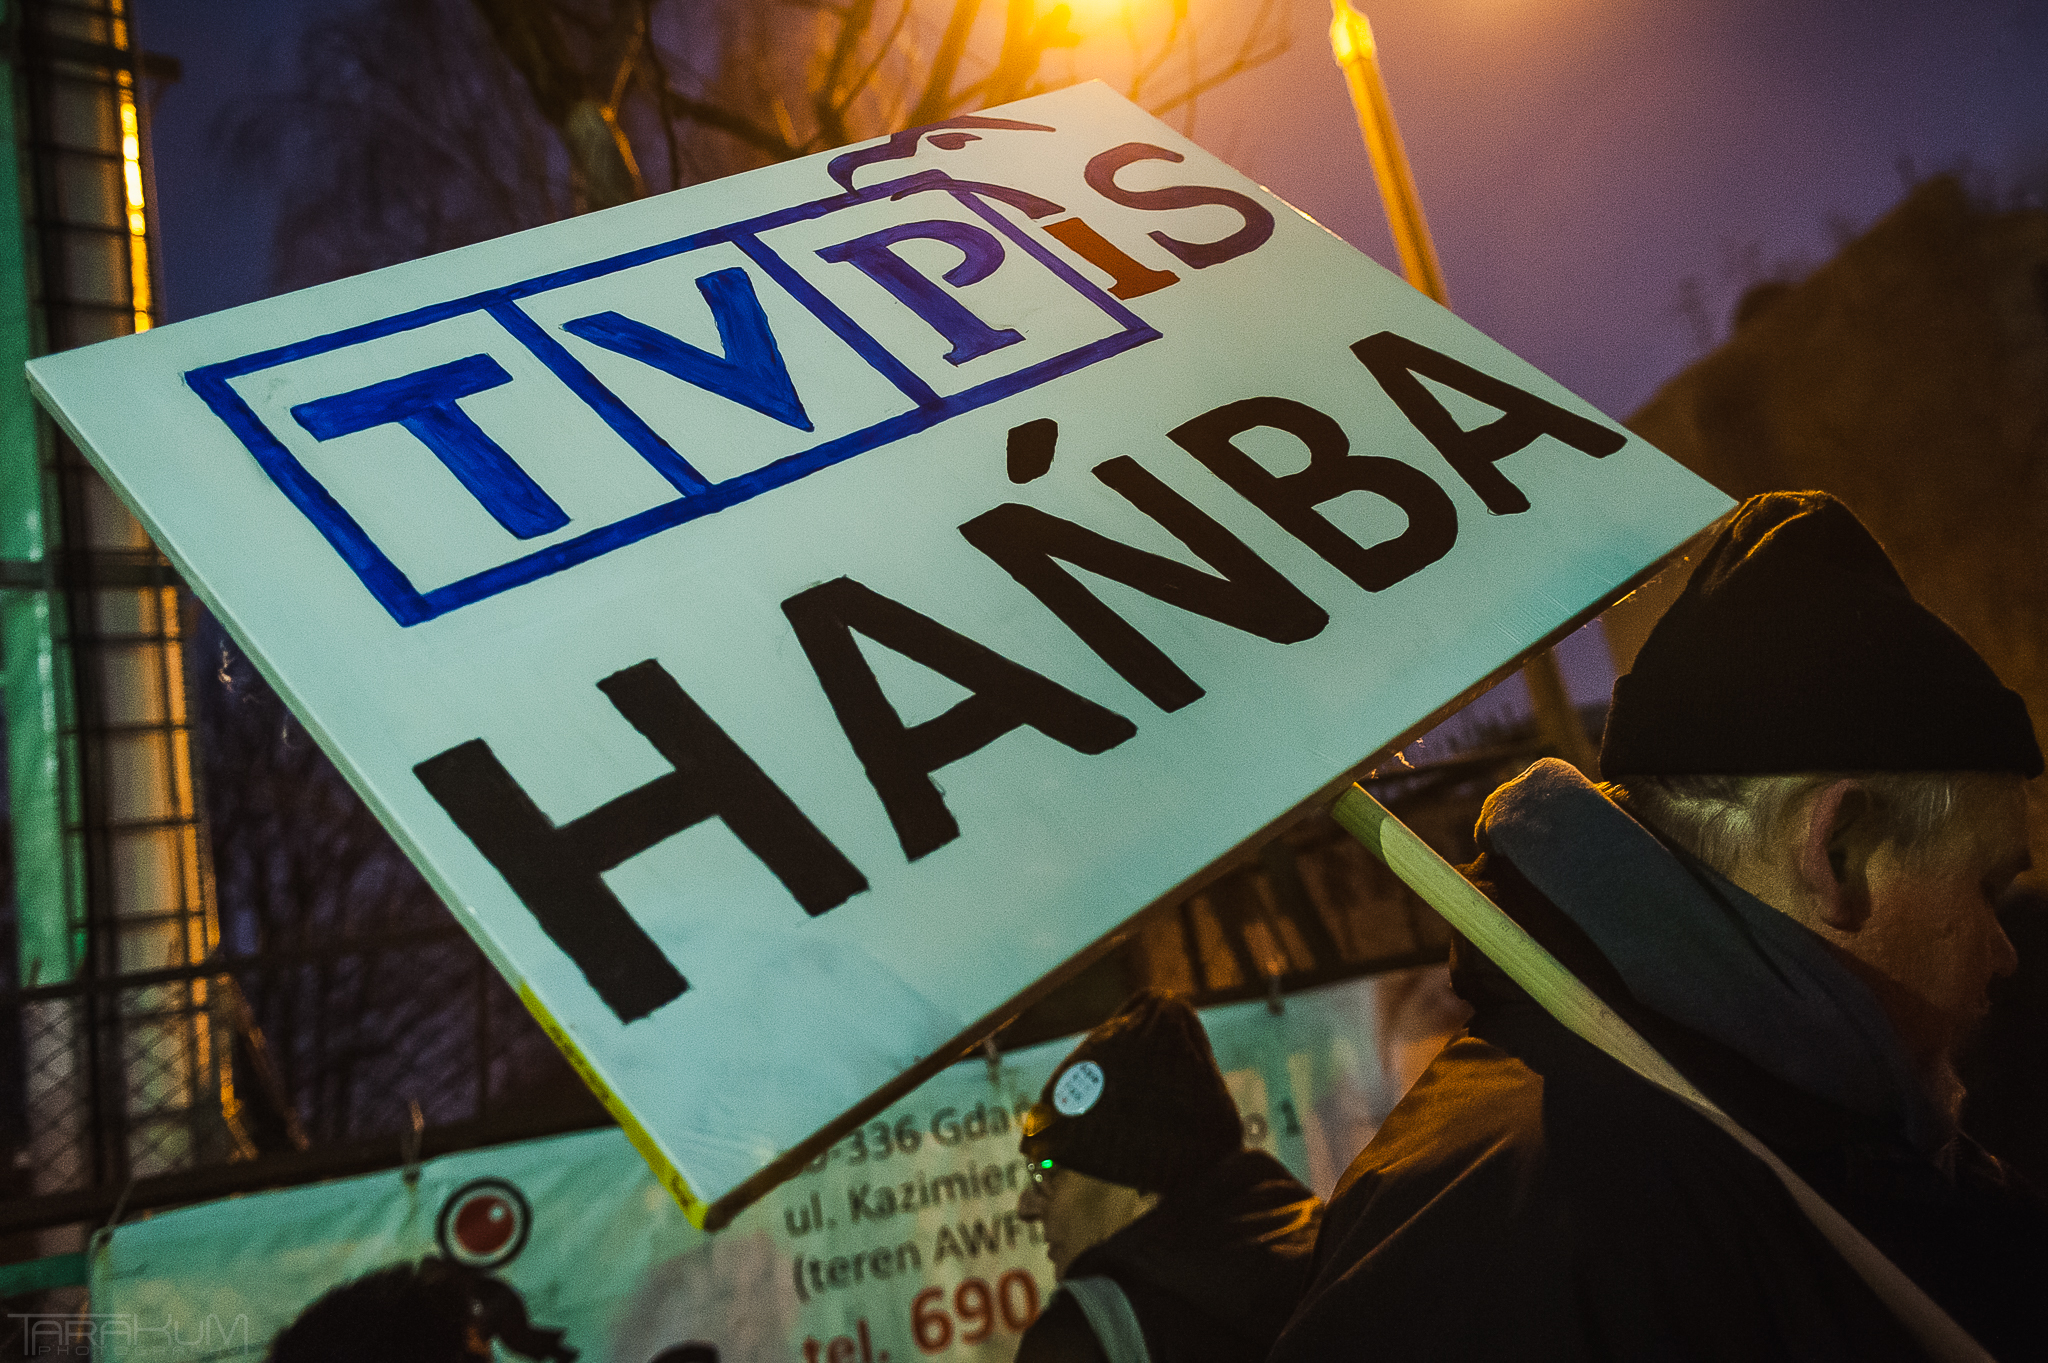 Żądamy zmian w TVP. Protest w Gdańsku